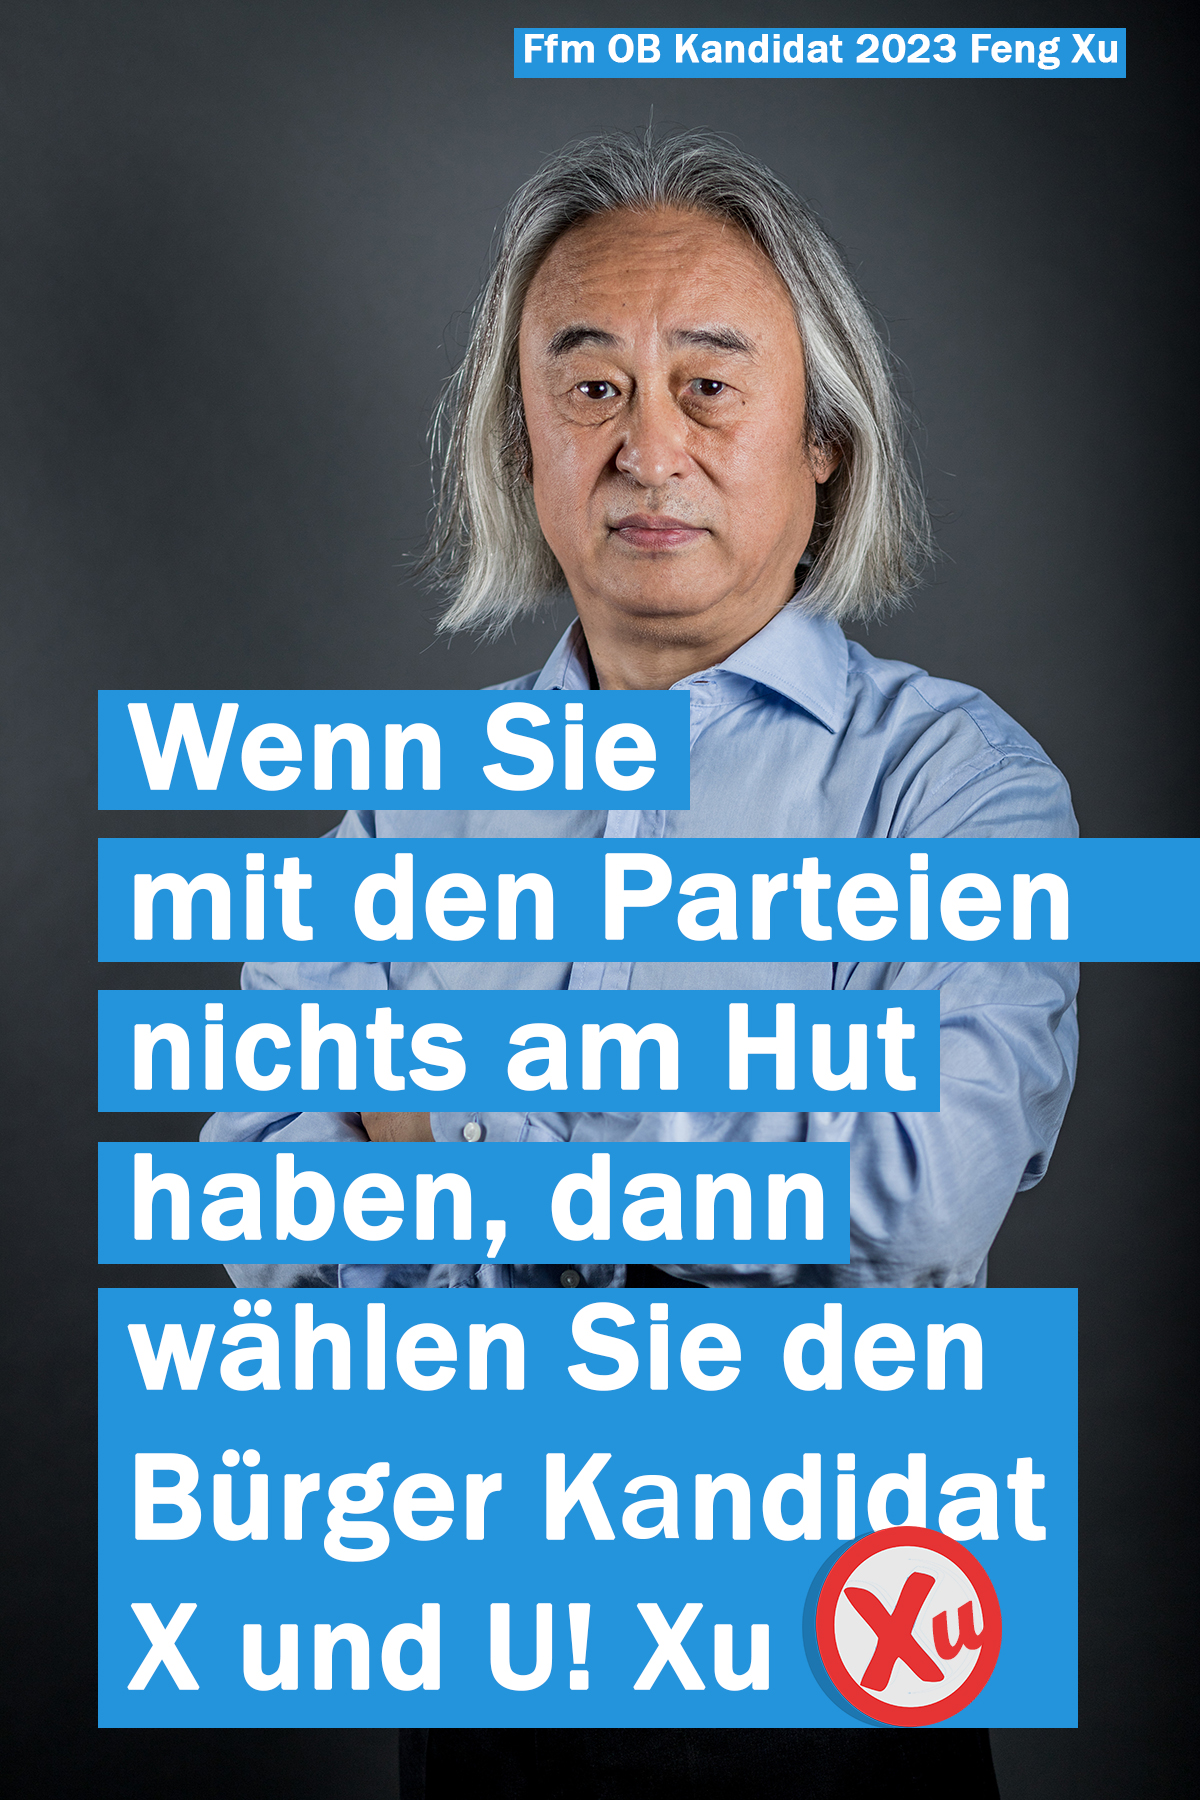 wählen Sie den Frankfurter Bürger Kandidat Xu